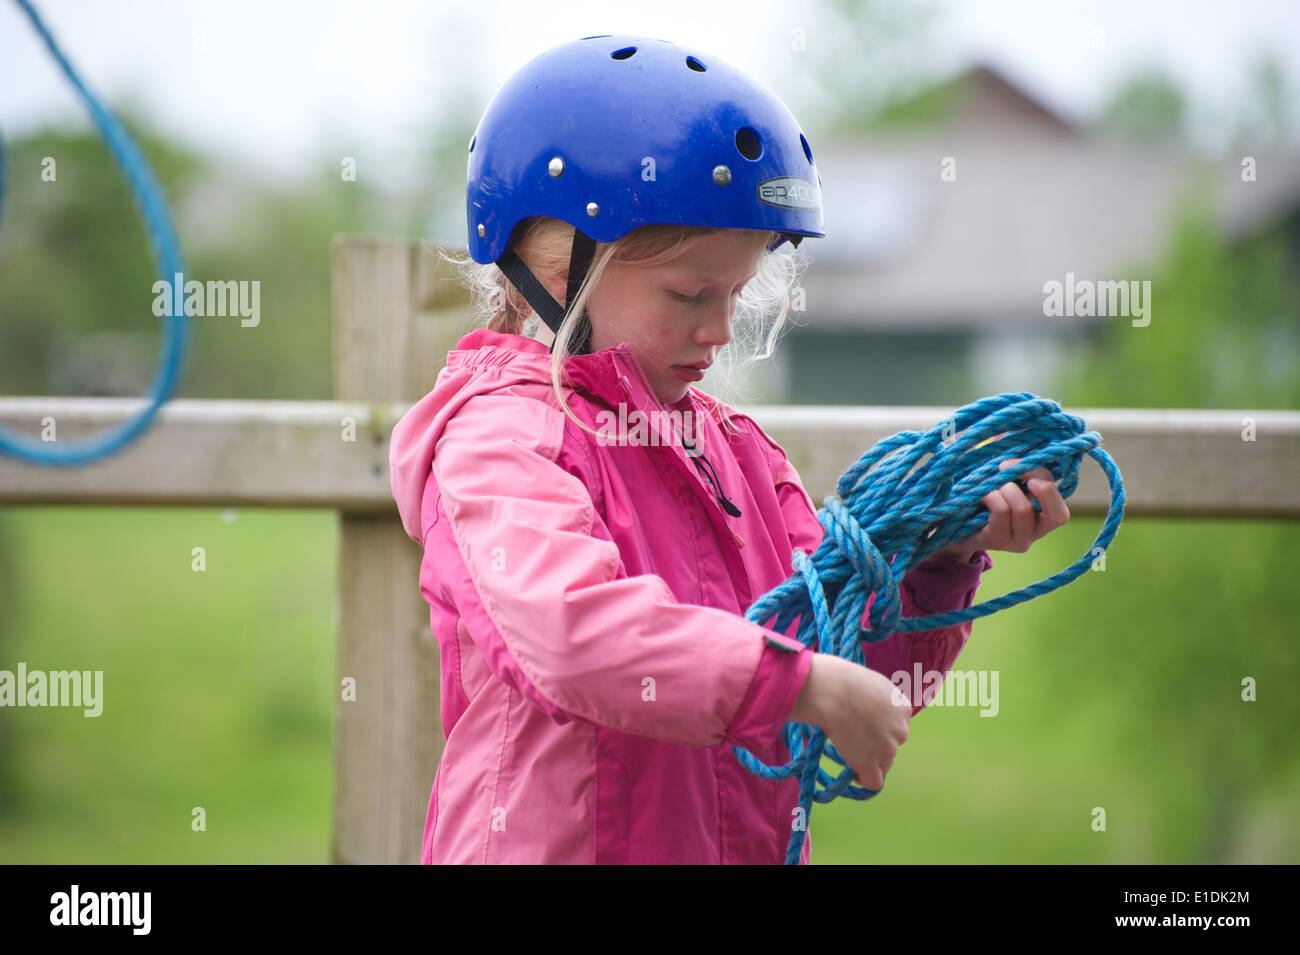 Junge blonde Mädchen Kind Kind tragen, Helm und Schwimmweste Beteiligung an Wassersport Stockfoto